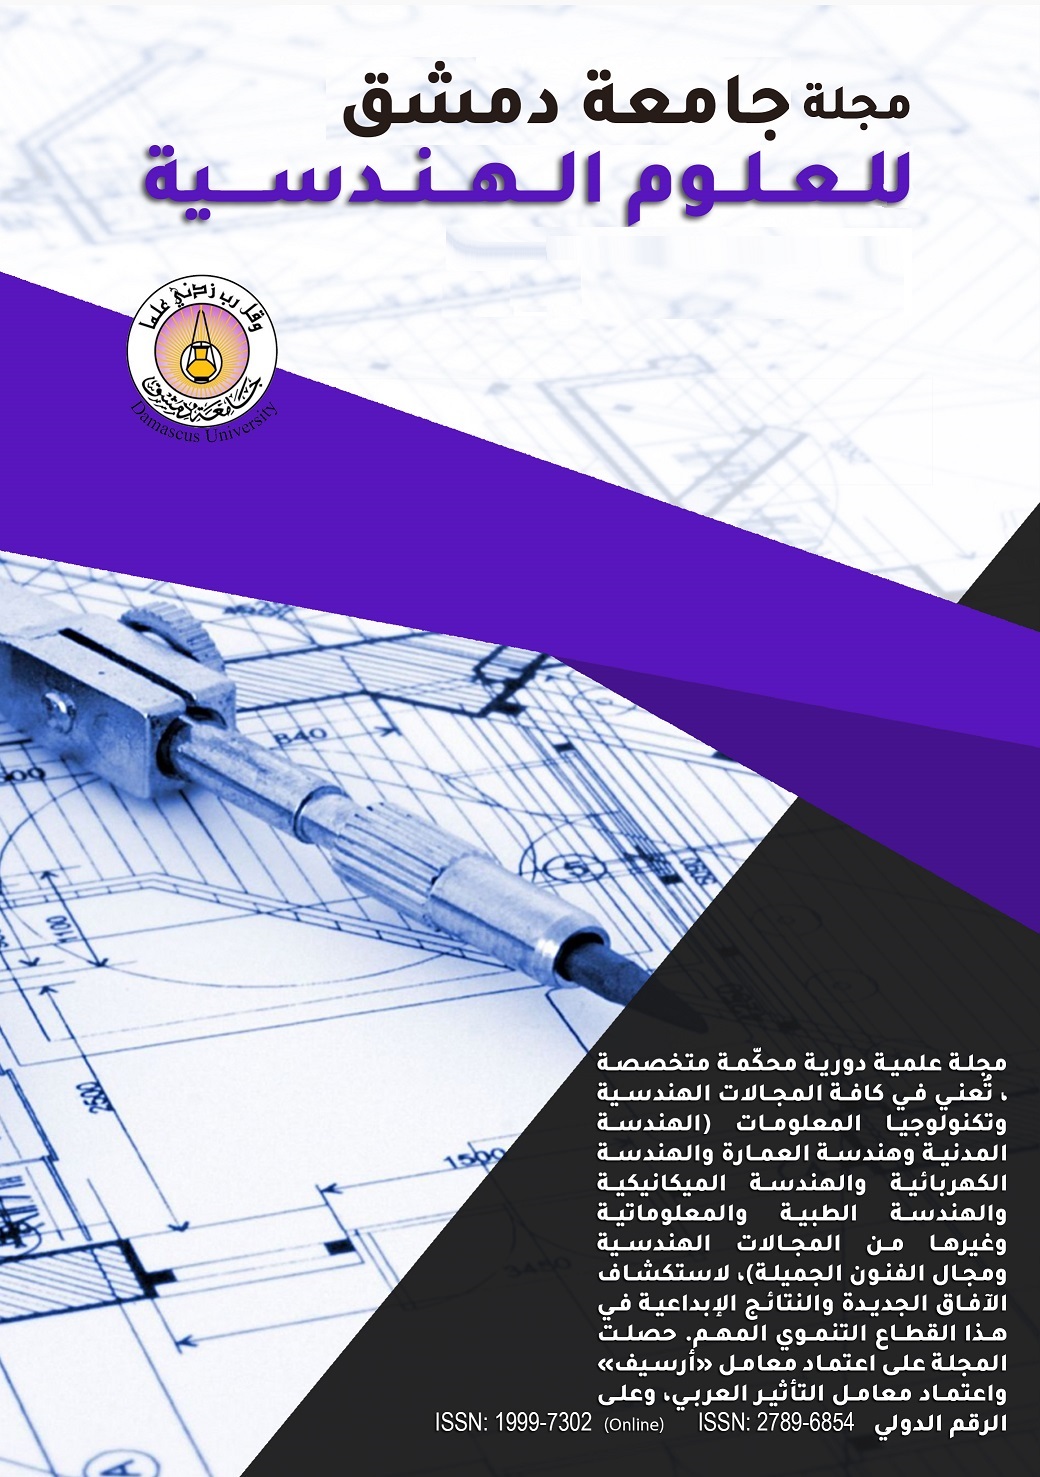 					معاينة مجلد 32 عدد 1 (2016): مجلة جامعة دمشق للعلوم الهندسية 
				